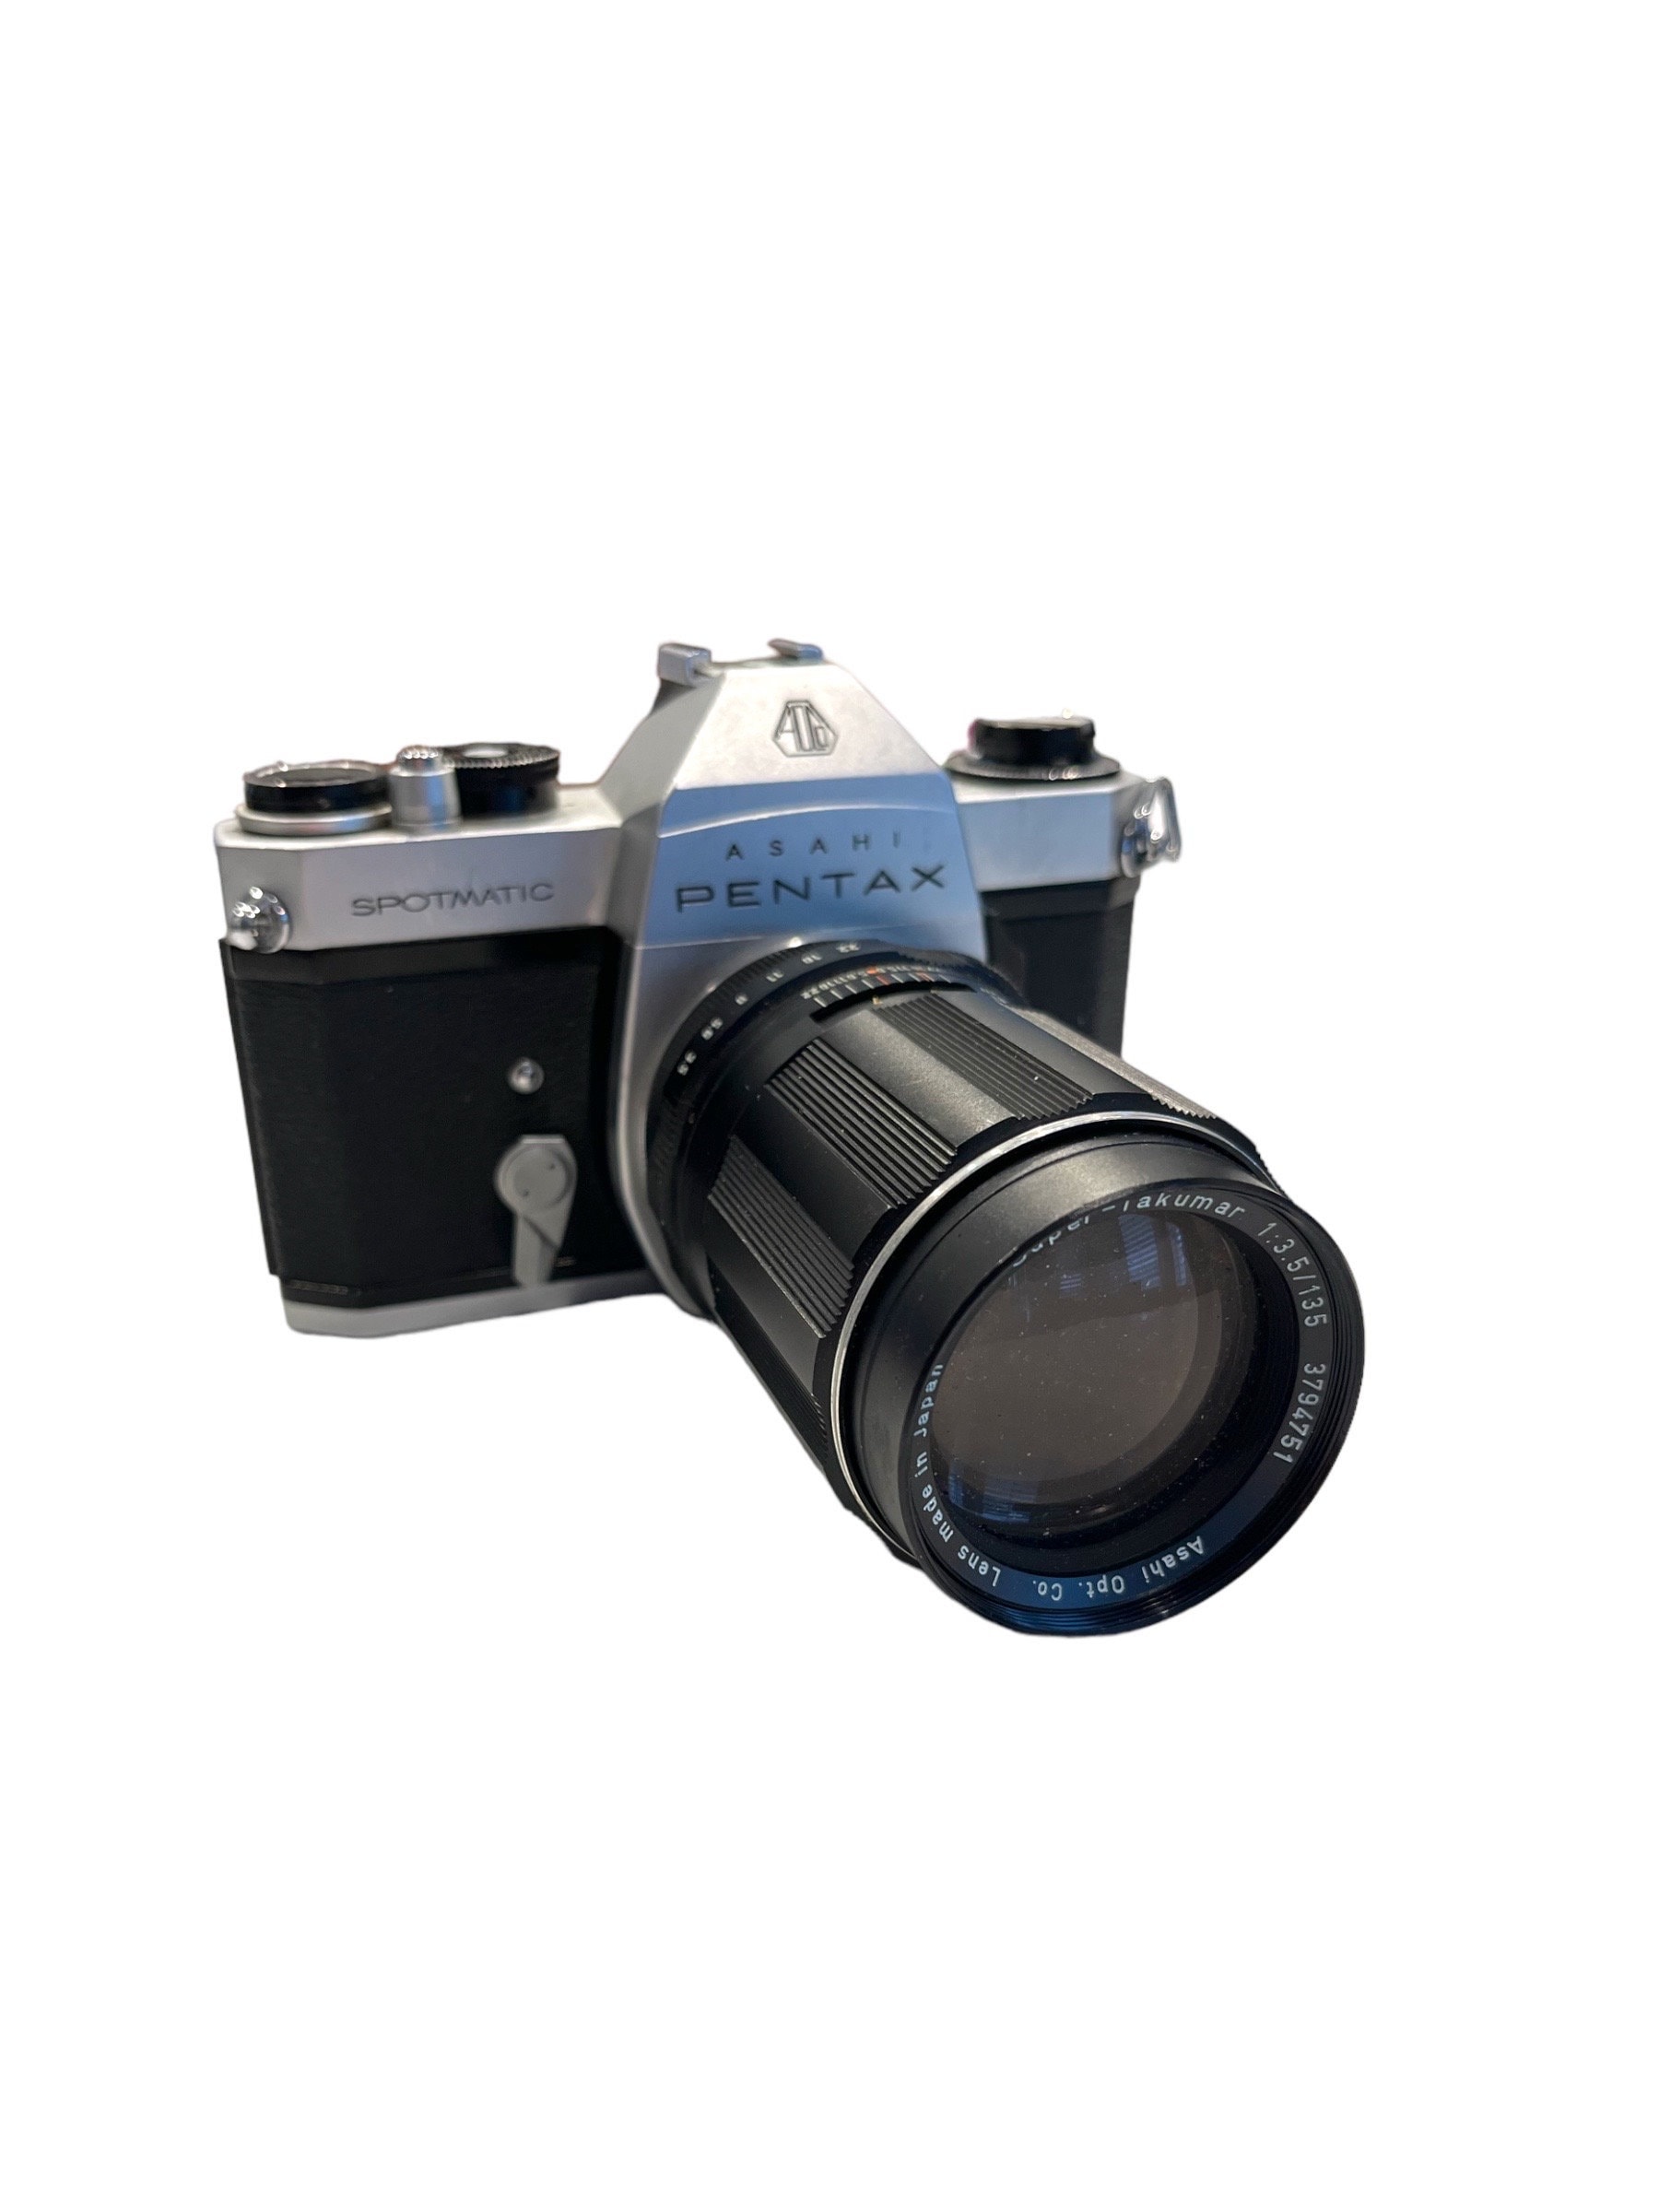 Buy Vintage 35MM Film Camera Asahi Pentax SP II Model 35MM Camera